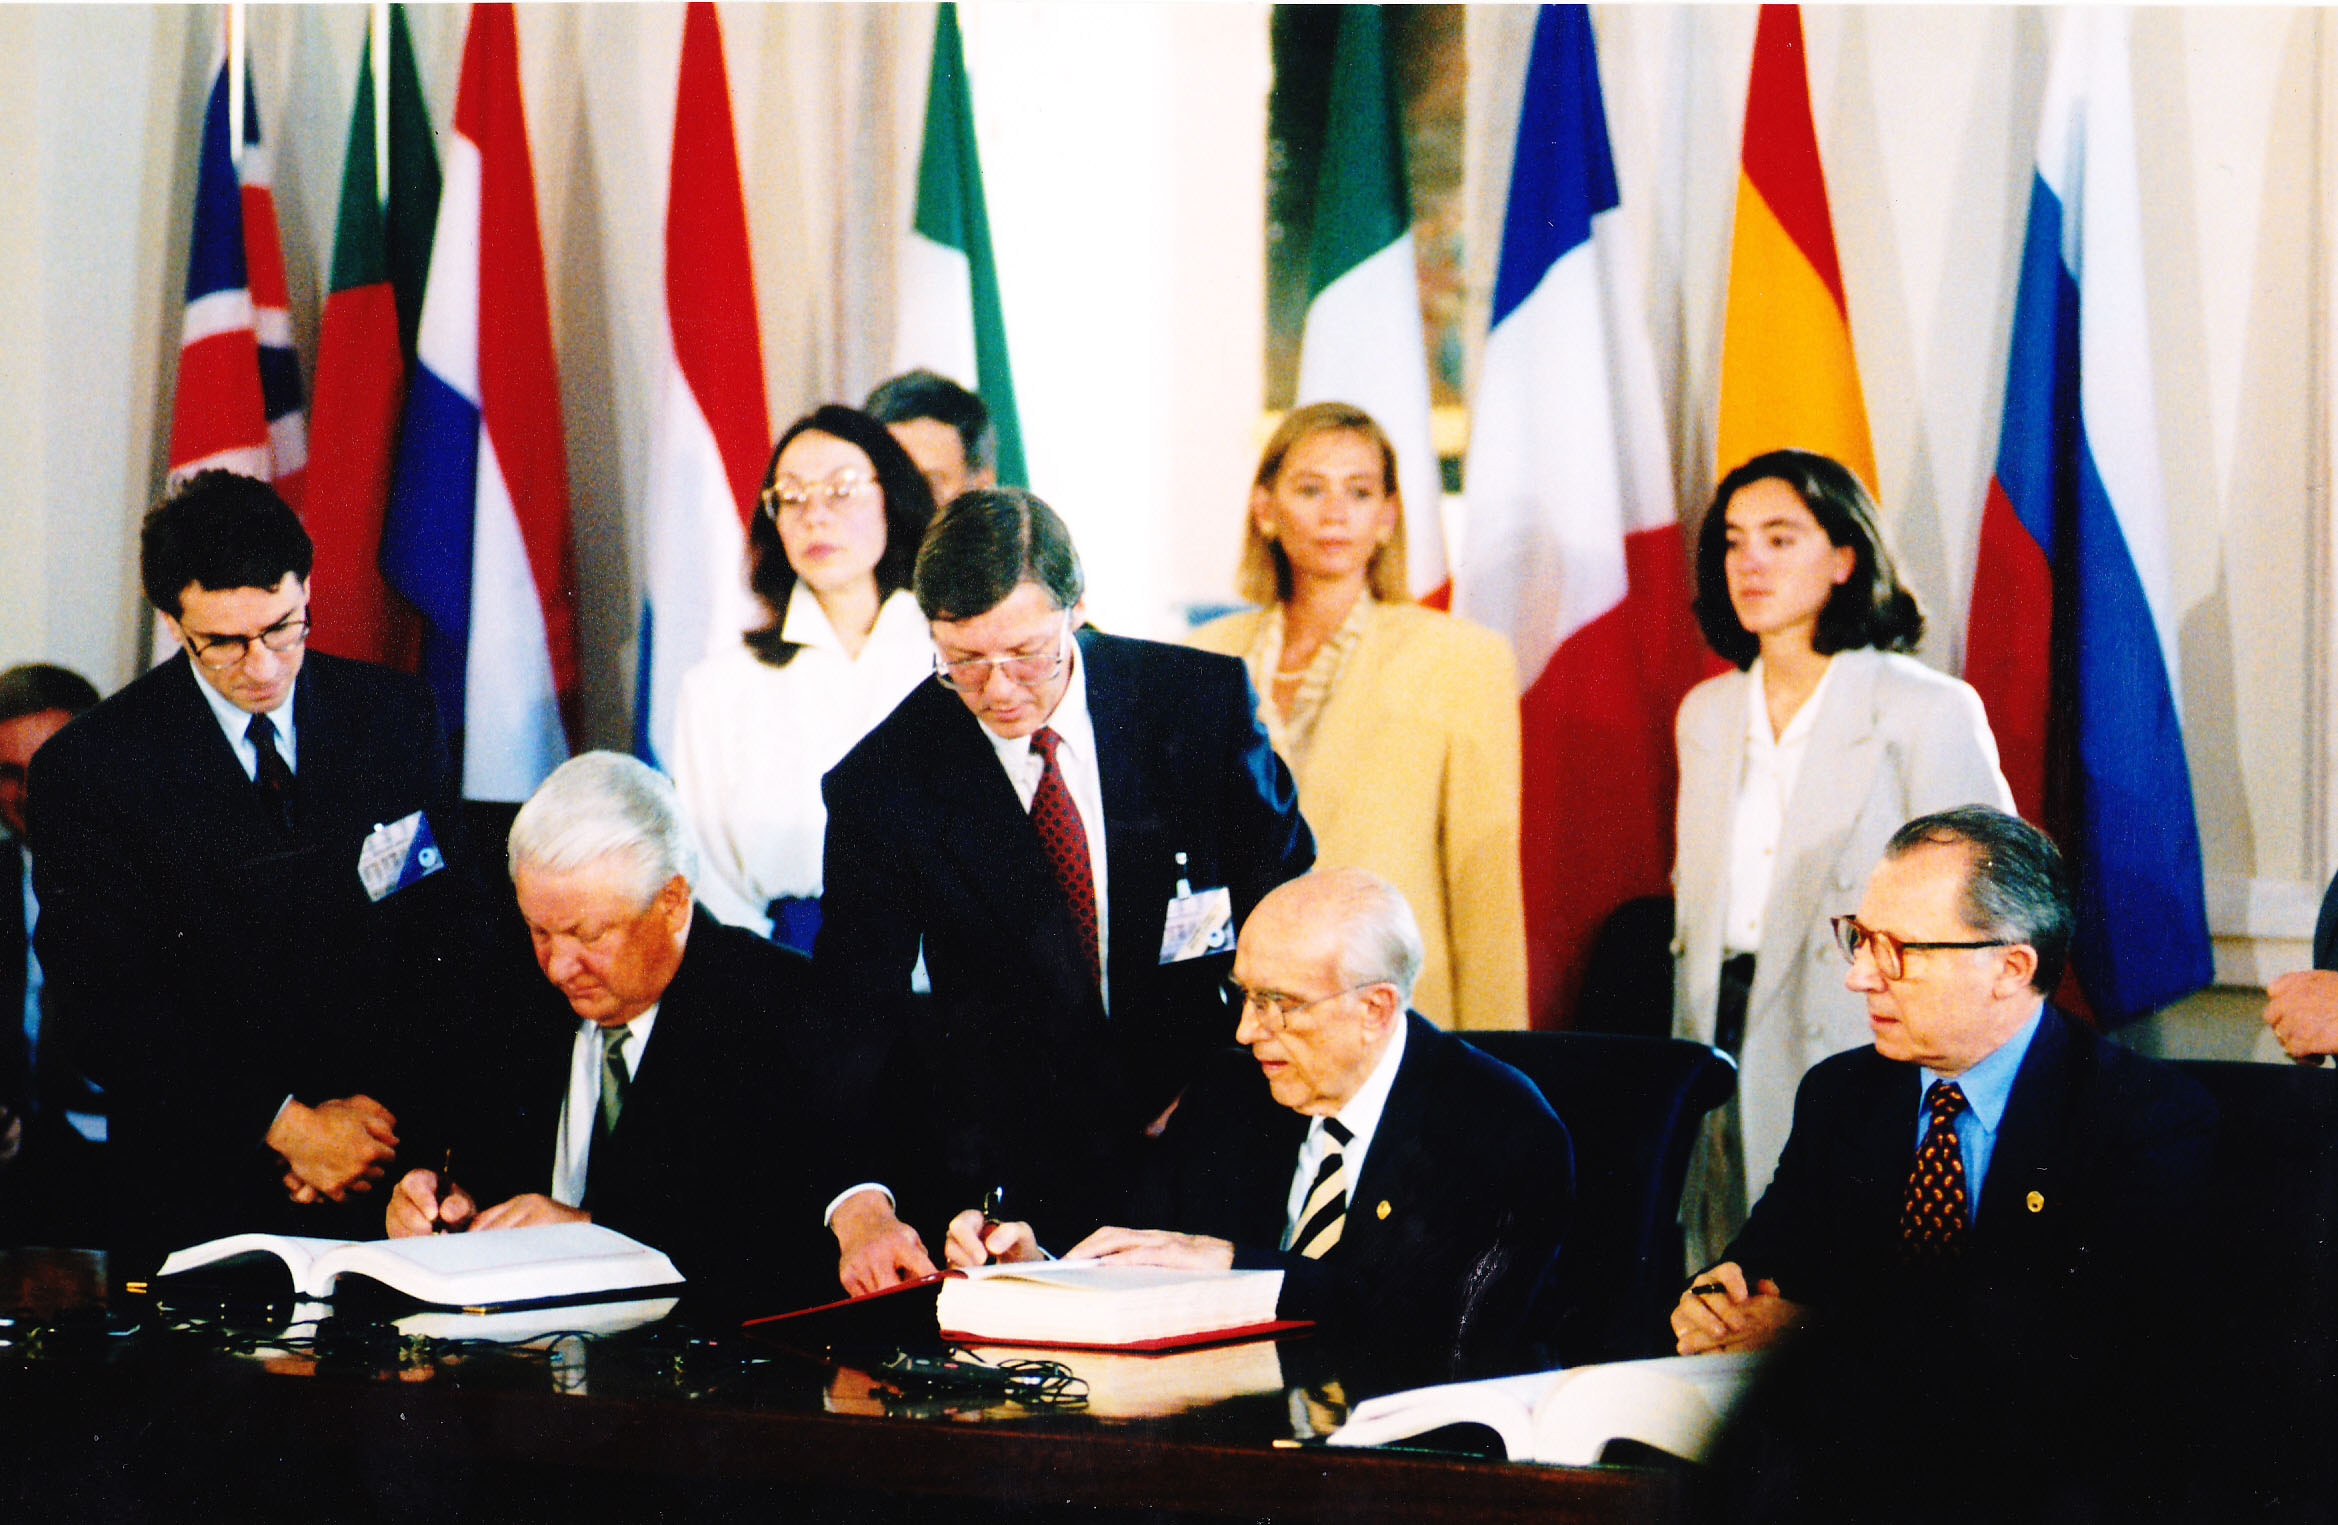 Дружественные отношения между странами. Соглашение 1994 Россия ЕС. Соглашение о партнерстве и сотрудничестве между ЕС И Россией 1997. Международное сотрудничество. Соглашение о партнерстве и сотрудничестве 1994.